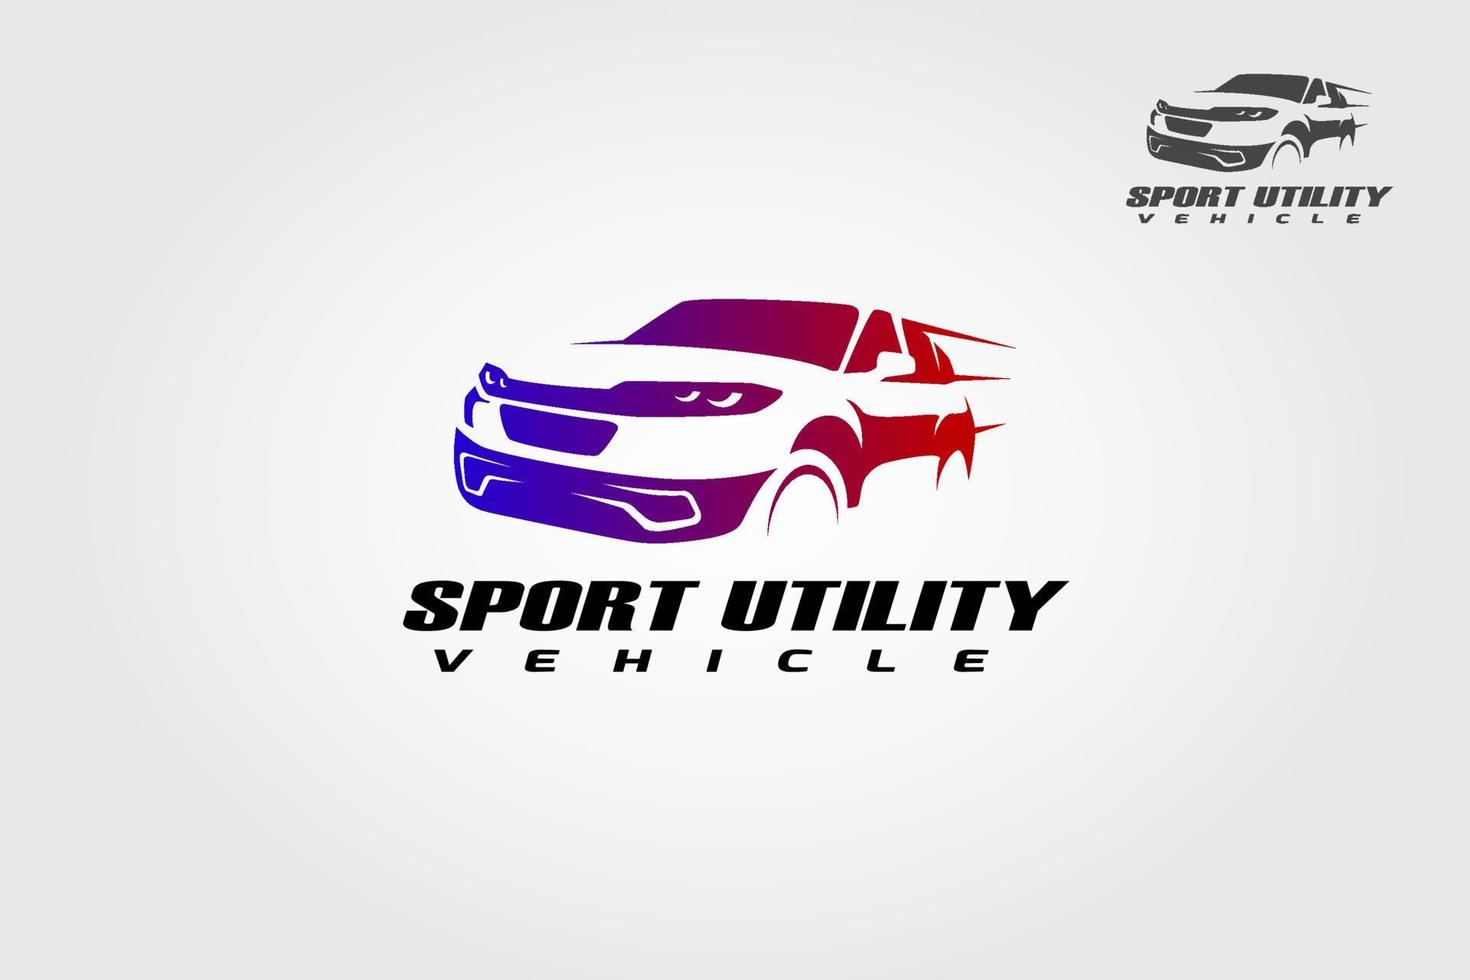 plantilla de logotipo de vector de utilidad deportiva. un logotipo de lujo y deportivo.